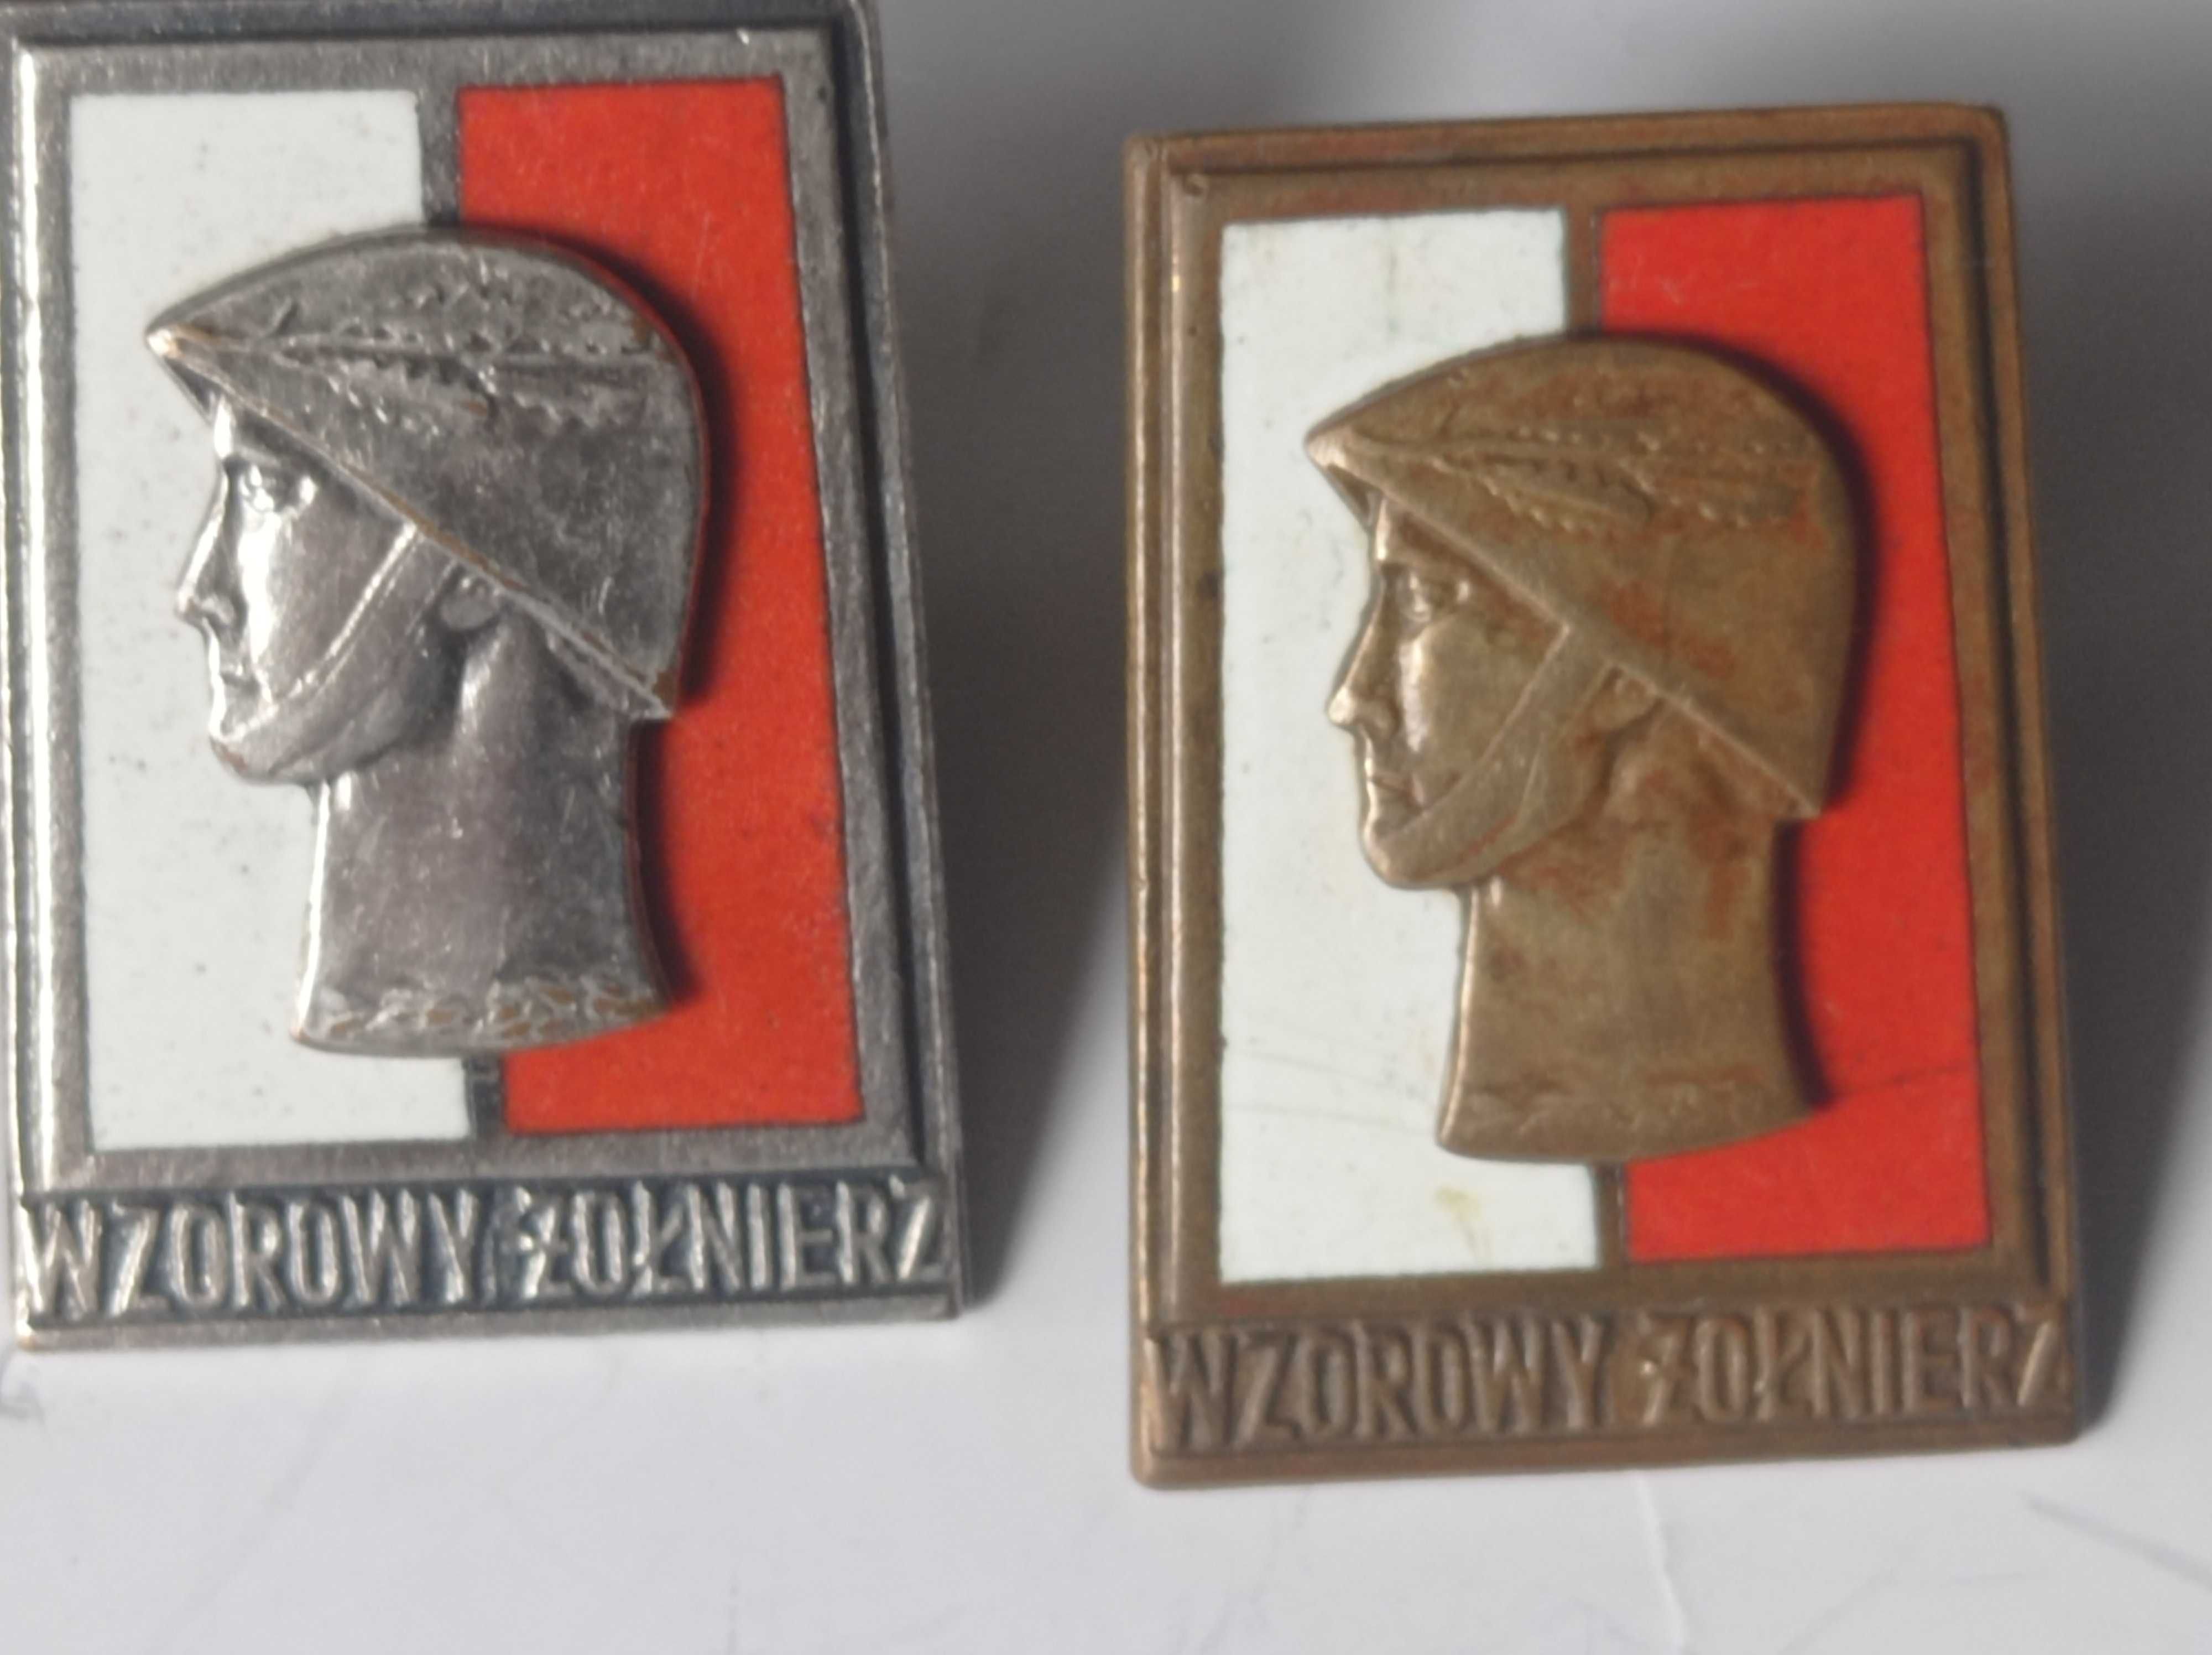 Wzorowy żołnierz x 3 - miniaturka 2 stopnia - oryginały -odznaki PRL.